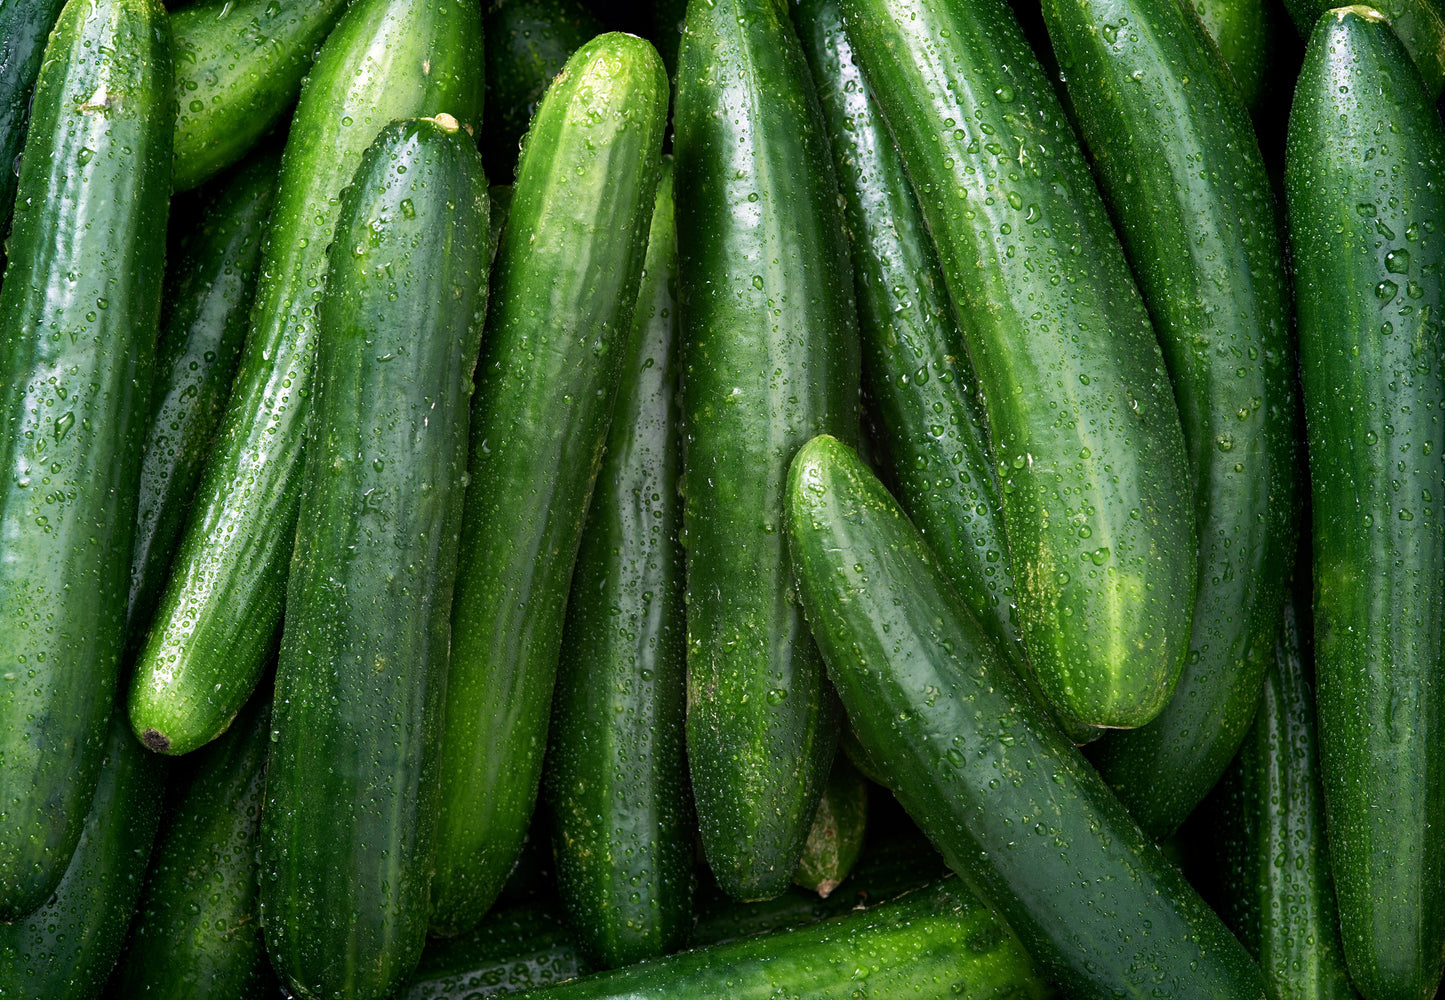 Cucumber x 1